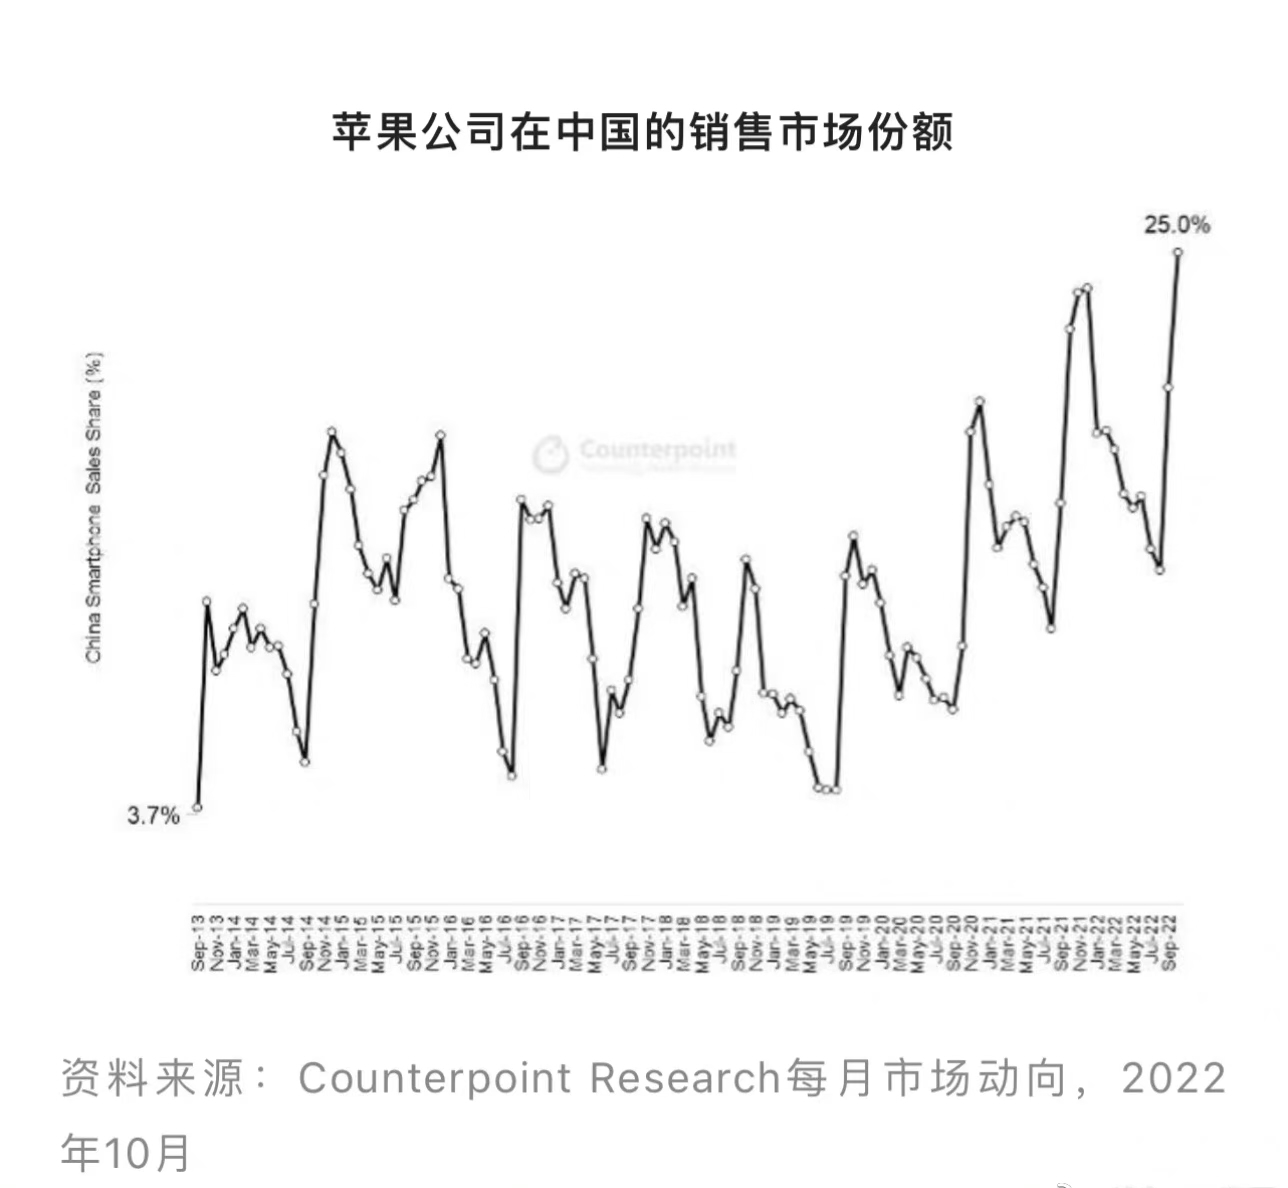 苹果|苹果不断更新过时产品；10月中国市场份额达25%，为历史最高水平